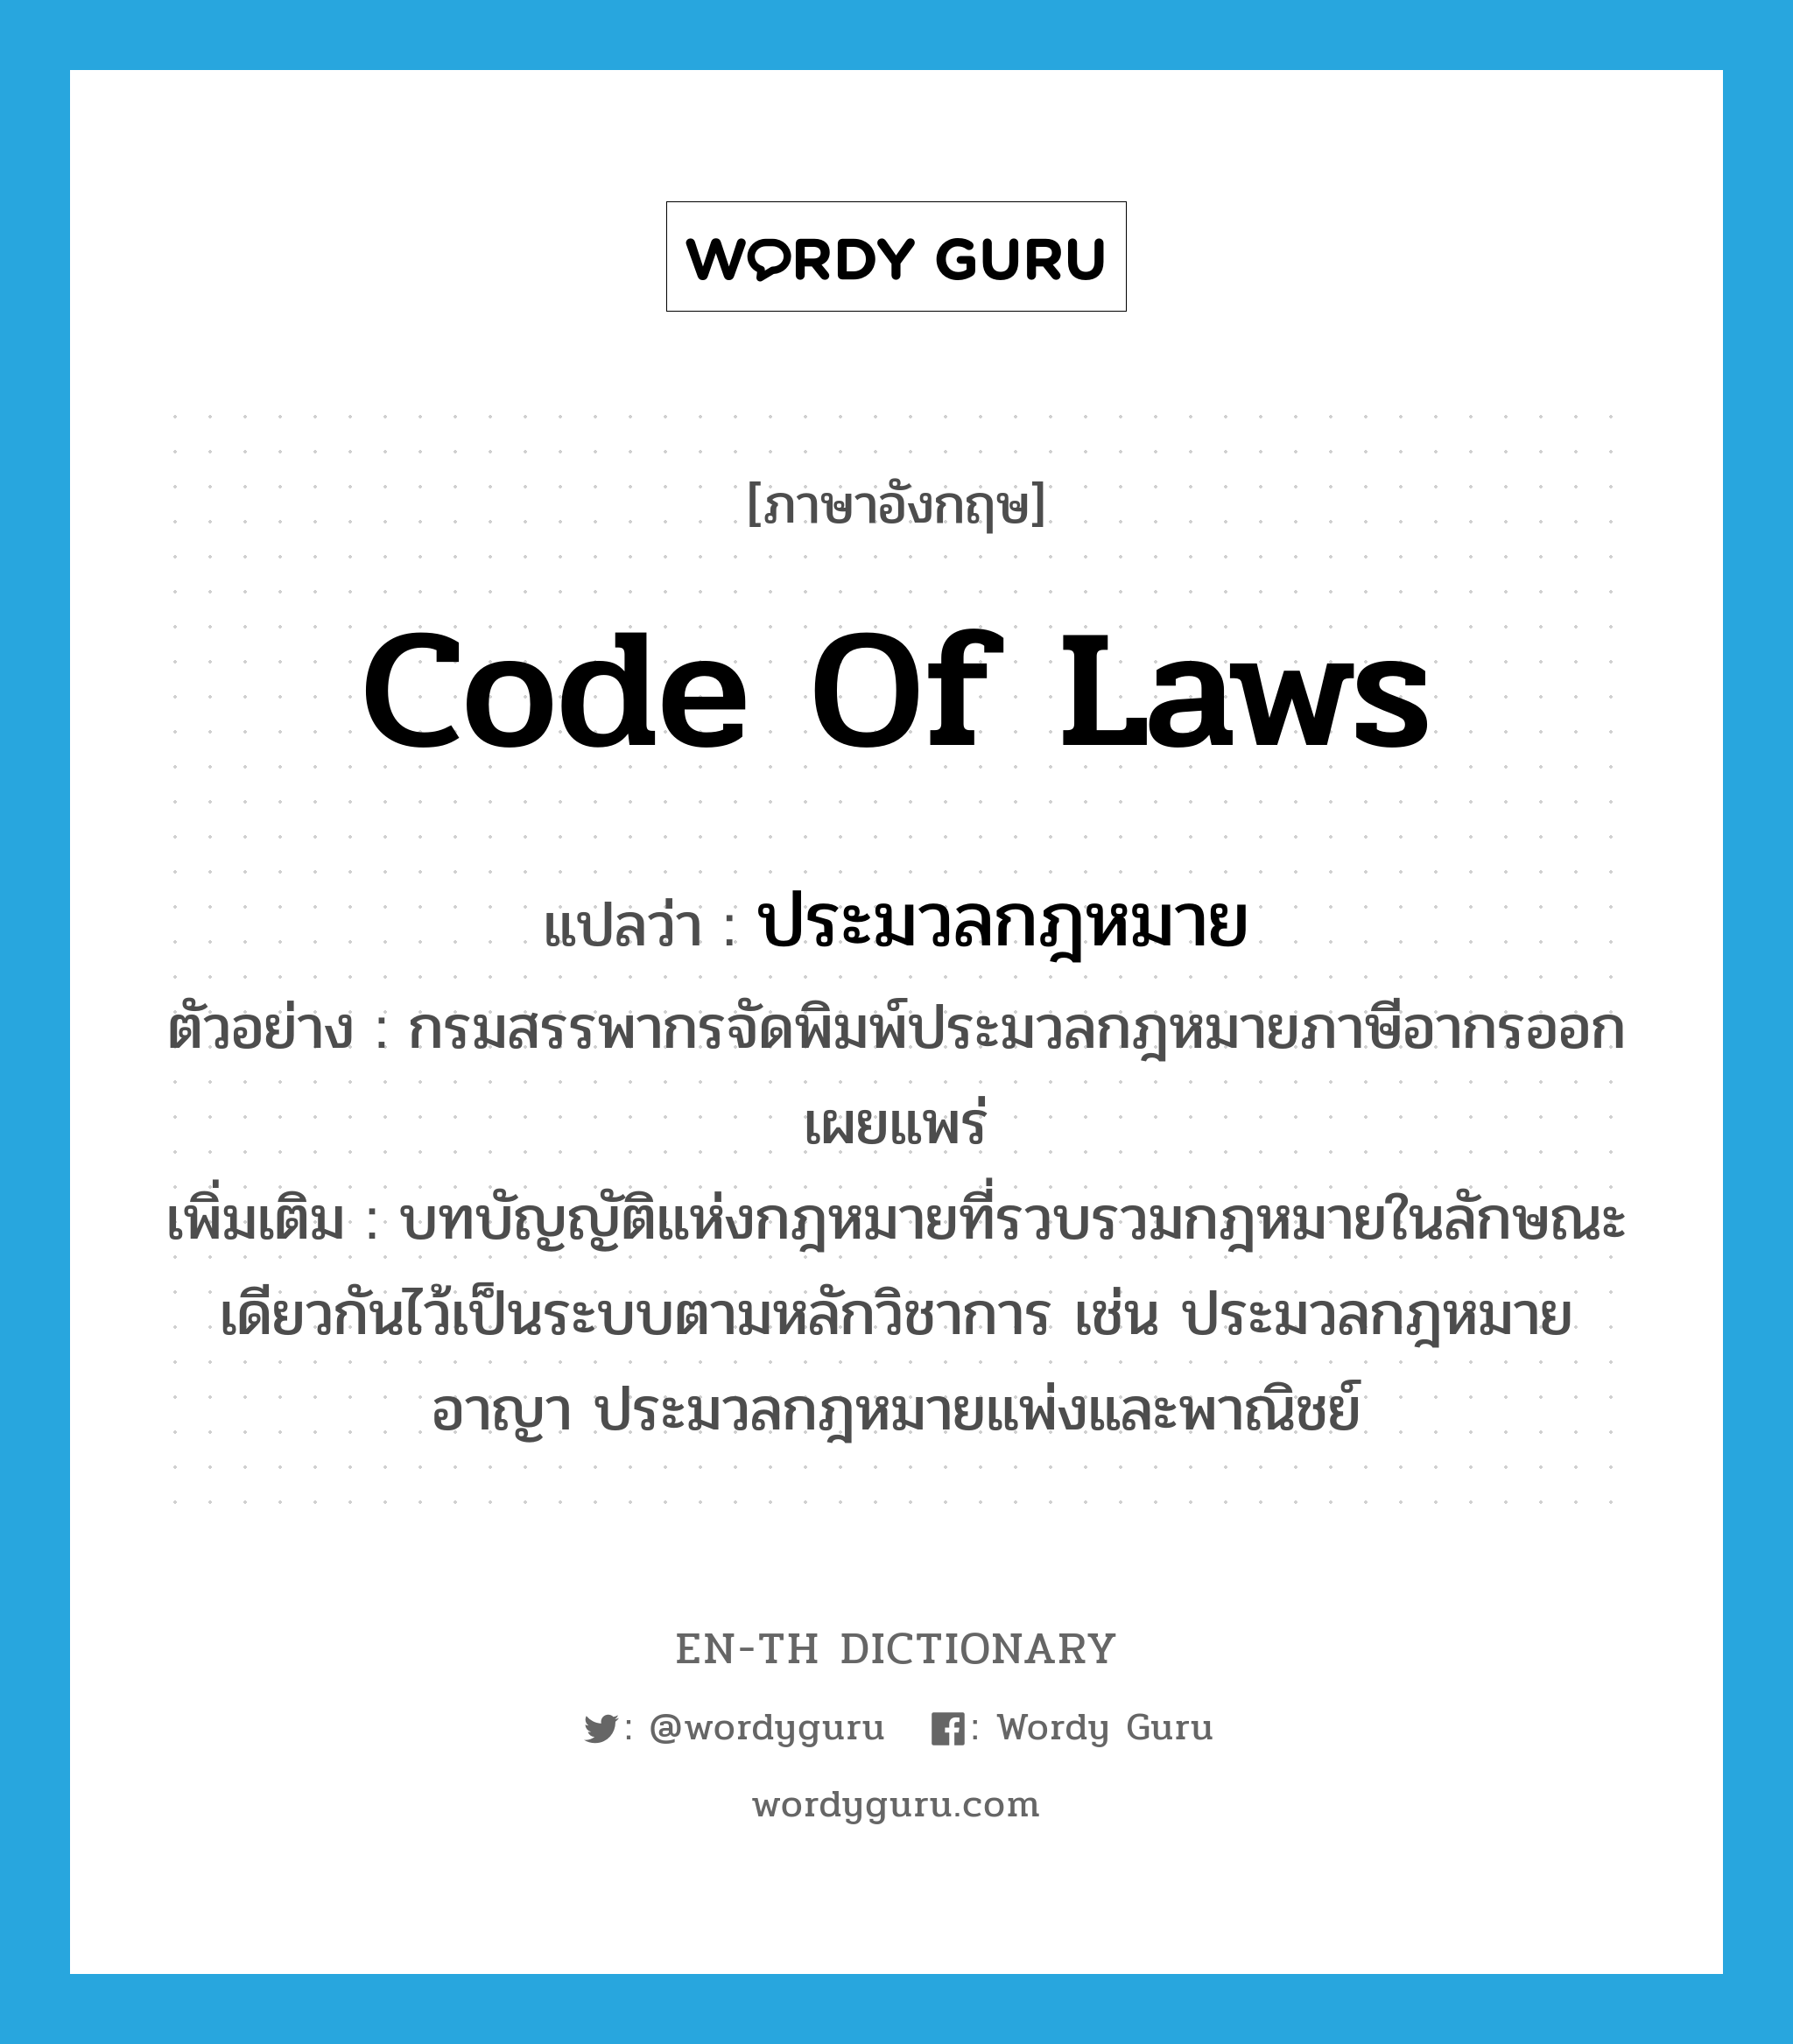 ประมวลกฎหมาย ภาษาอังกฤษ?, คำศัพท์ภาษาอังกฤษ ประมวลกฎหมาย แปลว่า code of laws ประเภท N ตัวอย่าง กรมสรรพากรจัดพิมพ์ประมวลกฎหมายภาษีอากรออกเผยแพร่ เพิ่มเติม บทบัญญัติแห่งกฎหมายที่รวบรวมกฎหมายในลักษณะเดียวกันไว้เป็นระบบตามหลักวิชาการ เช่น ประมวลกฎหมายอาญา ประมวลกฎหมายแพ่งและพาณิชย์ หมวด N